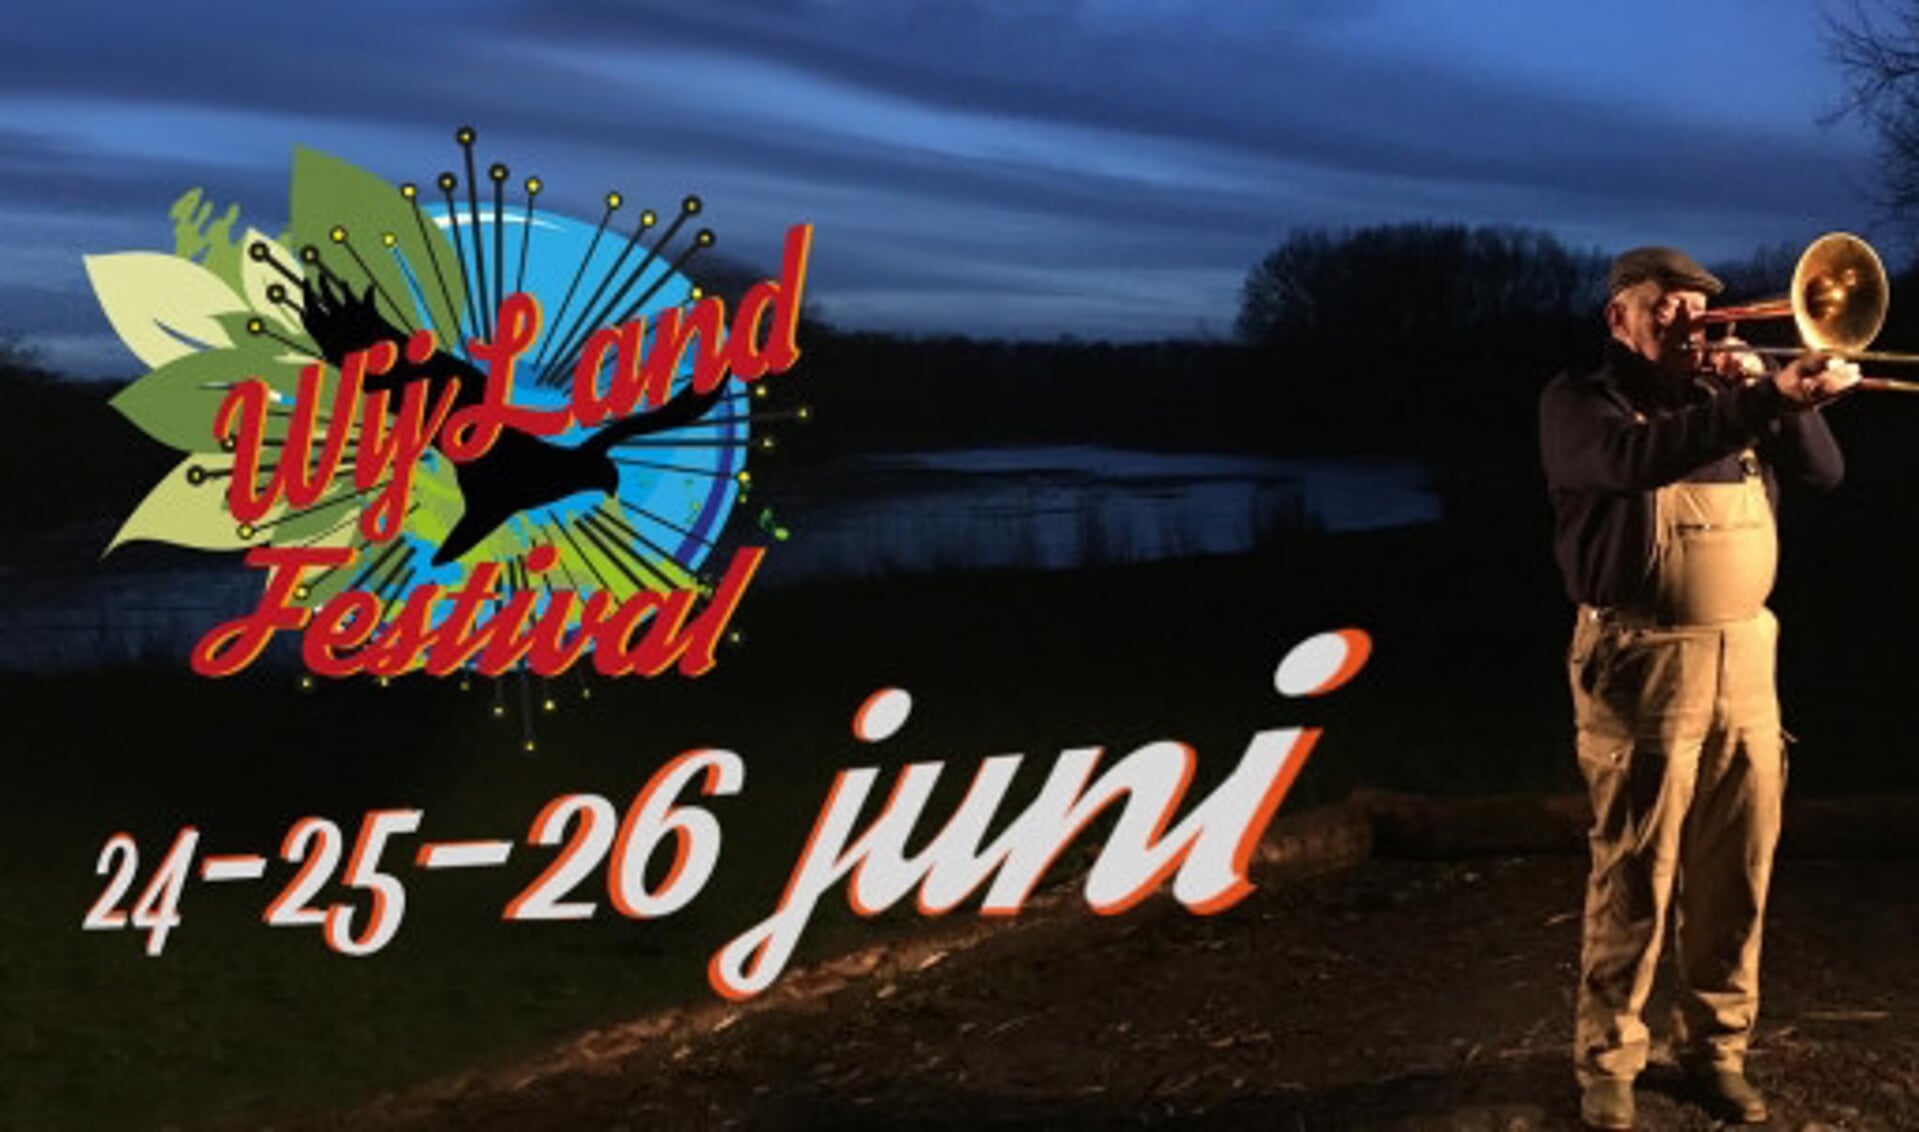  Het logo van het WijLand Festival.